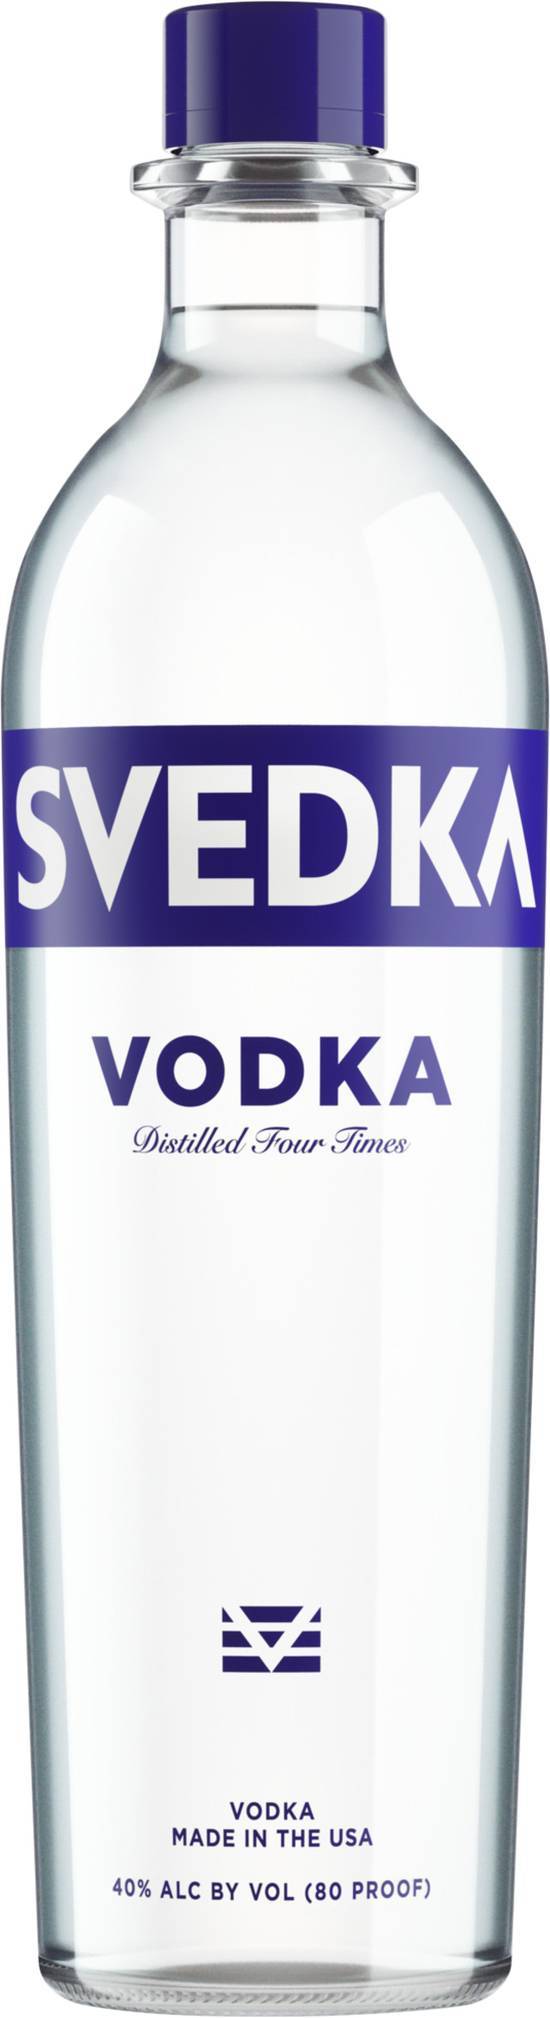 Svedka Vodka (750 ml)